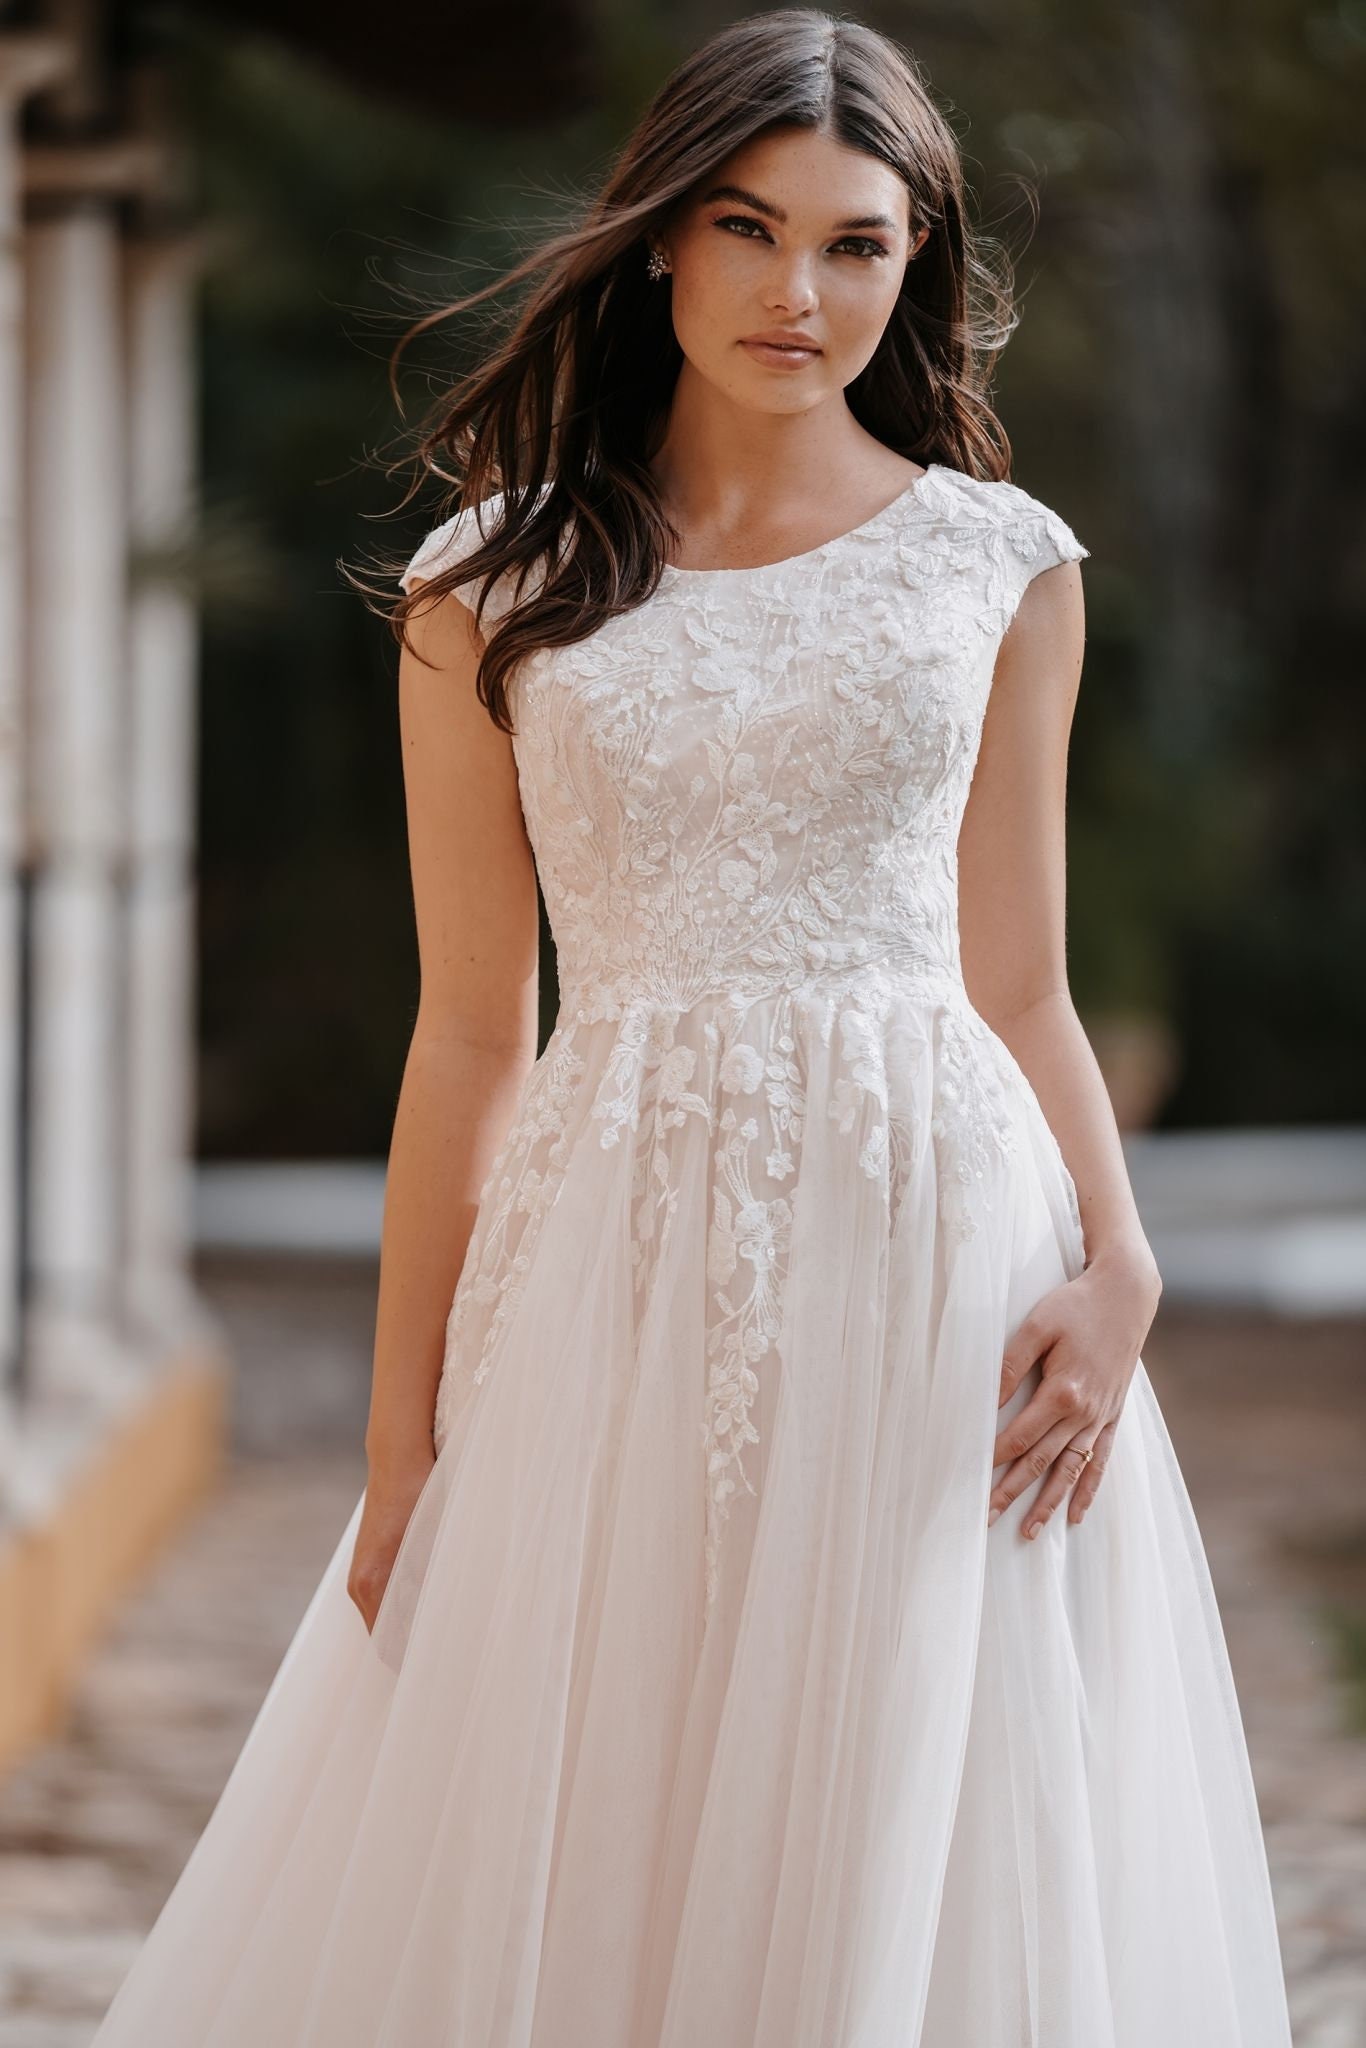 White Elegance's Top Modest Wedding Dresses for Summer